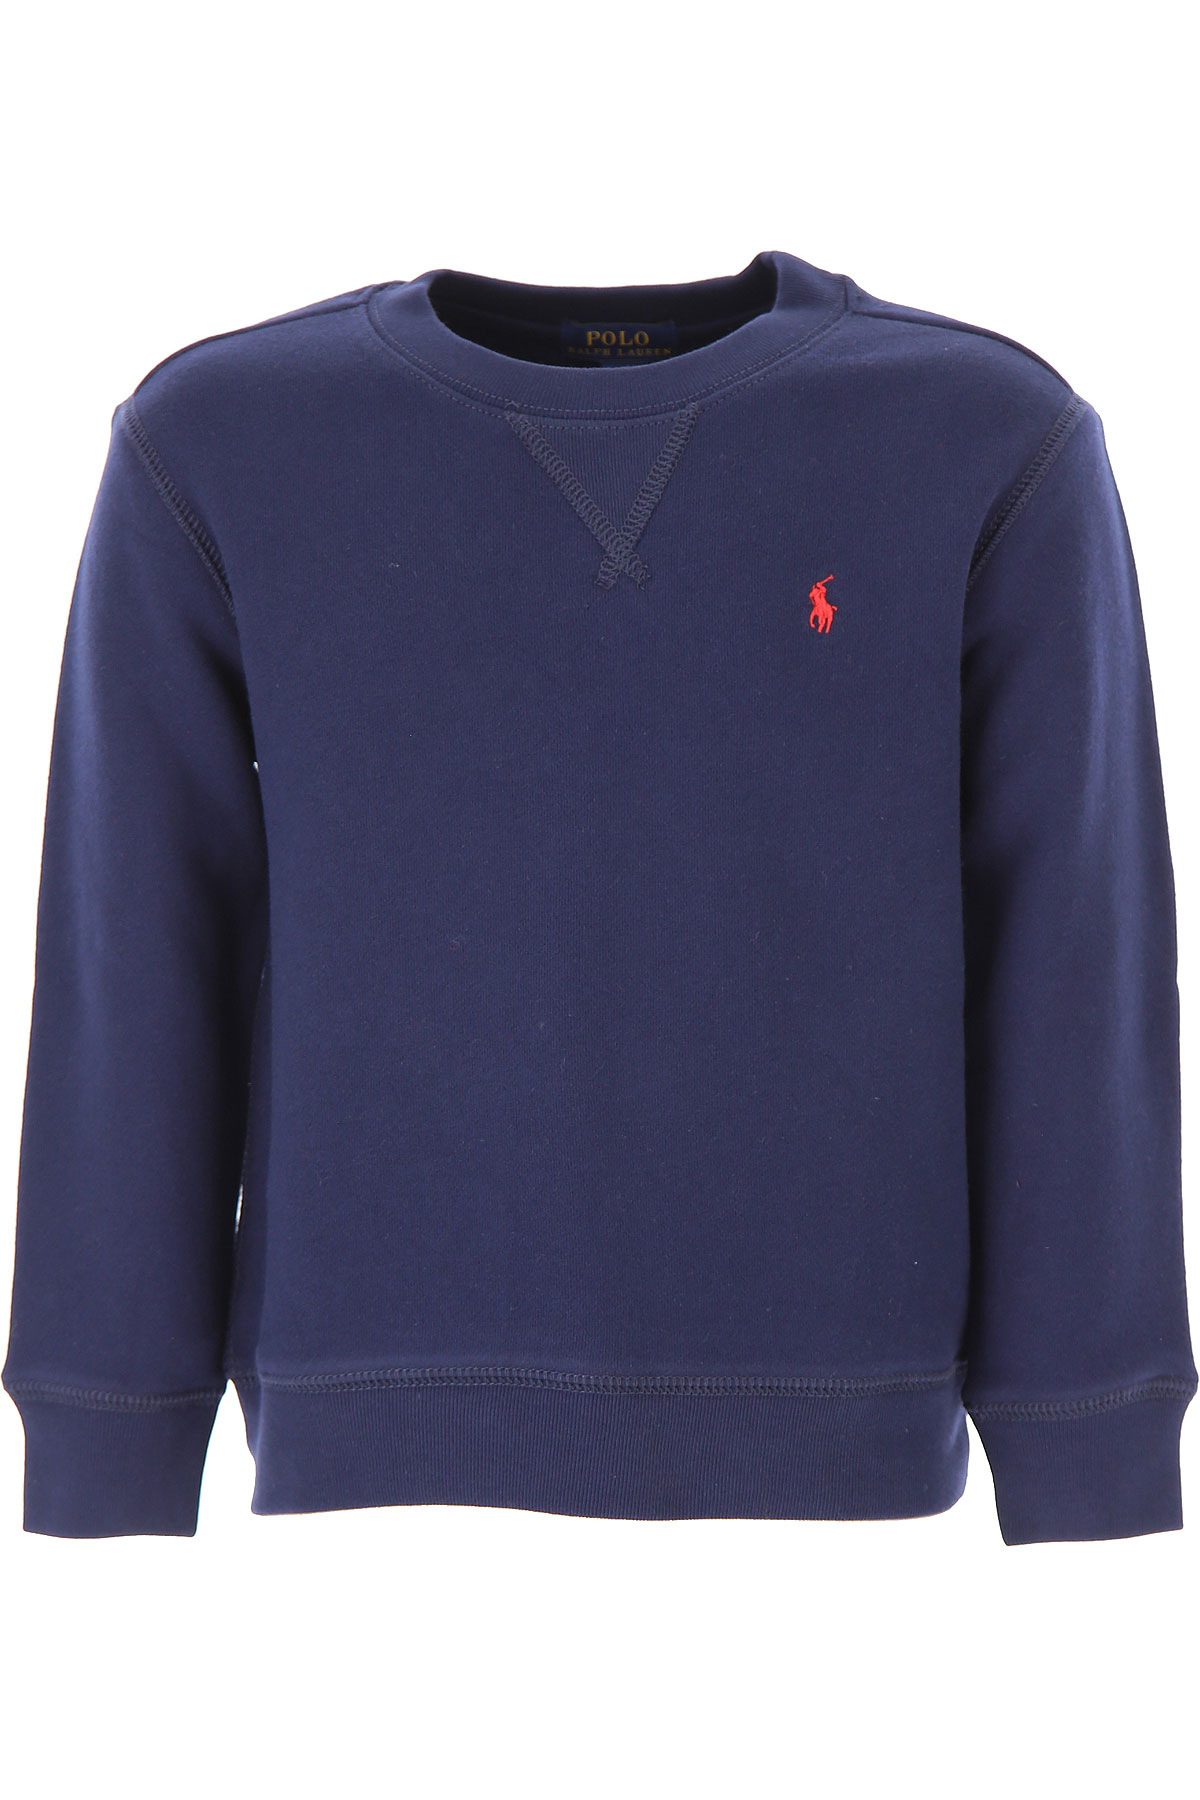 Ralph Lauren Kinder Sweatshirt & Kapuzenpullover für Jungen Günstig im Sale, Marine blau, Baumwolle, 2017, 2Y 3Y 4Y